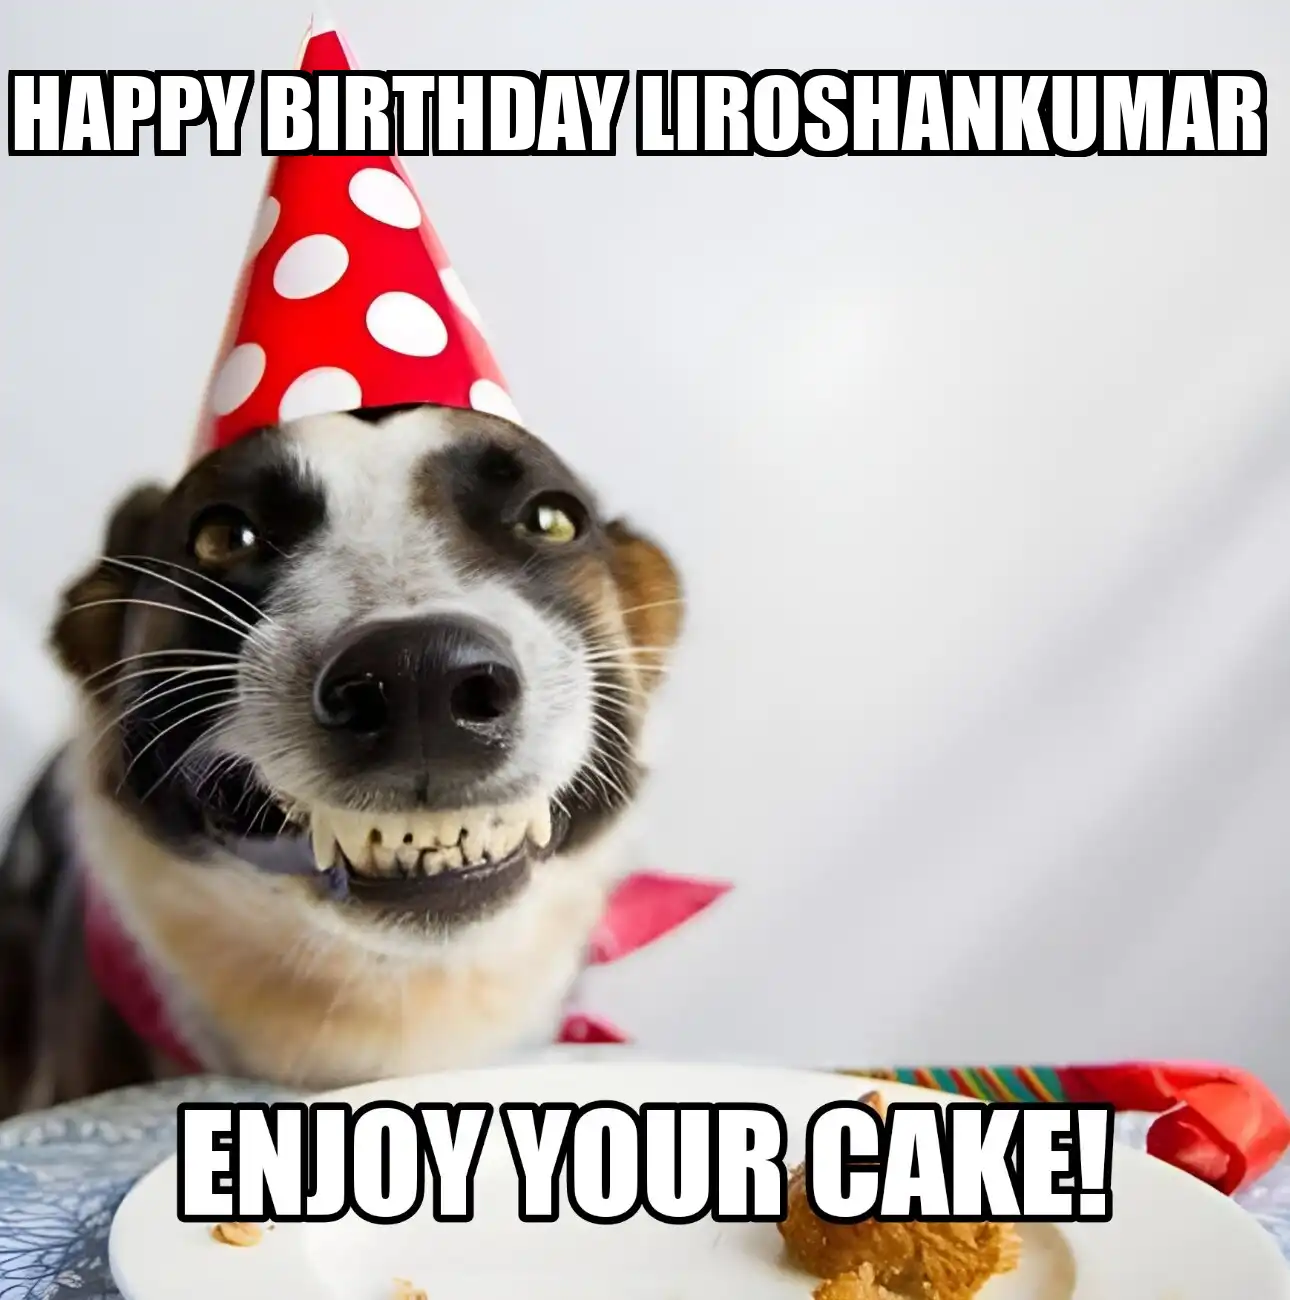 Happy Birthday Liroshankumar Enjoy Your Cake Dog Meme